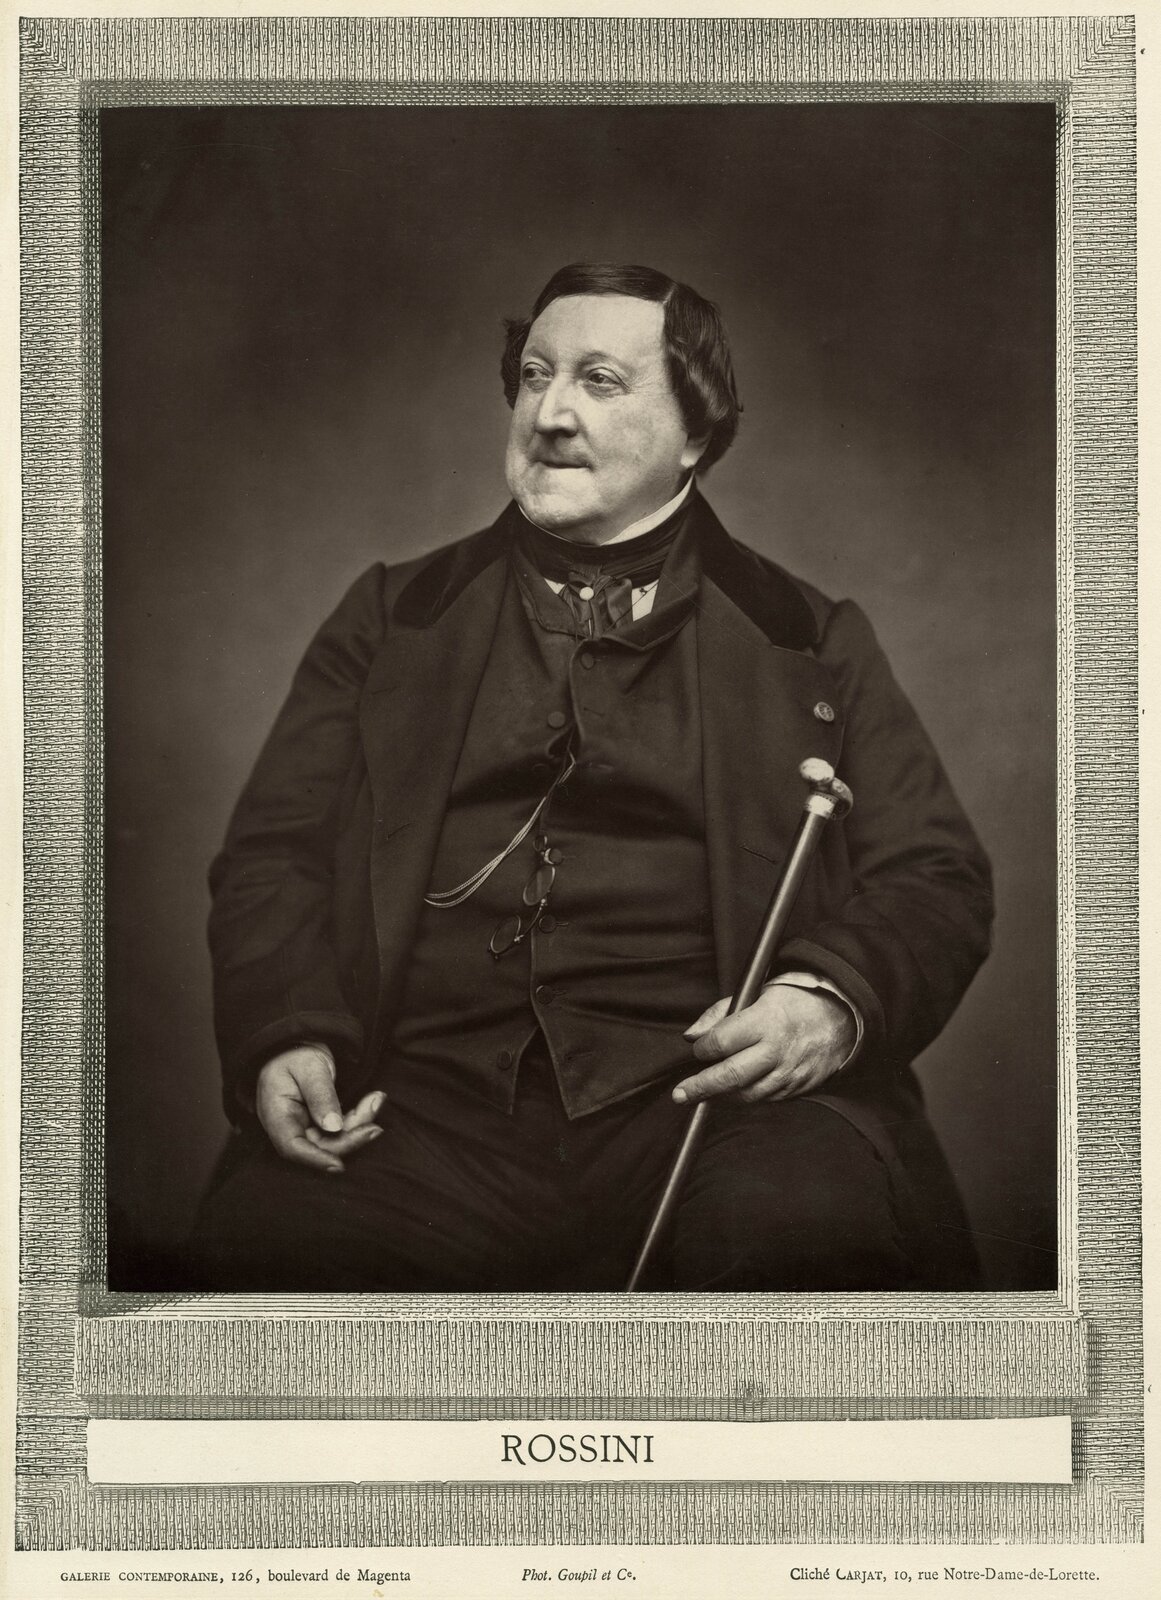 Ilustracja przedstawia portret Gioacchino Rossiniego nieznanego autora. Rossini pozuje siedząc. W dłoni trzyma laskę, a na torsie zawieszone ma okulary.